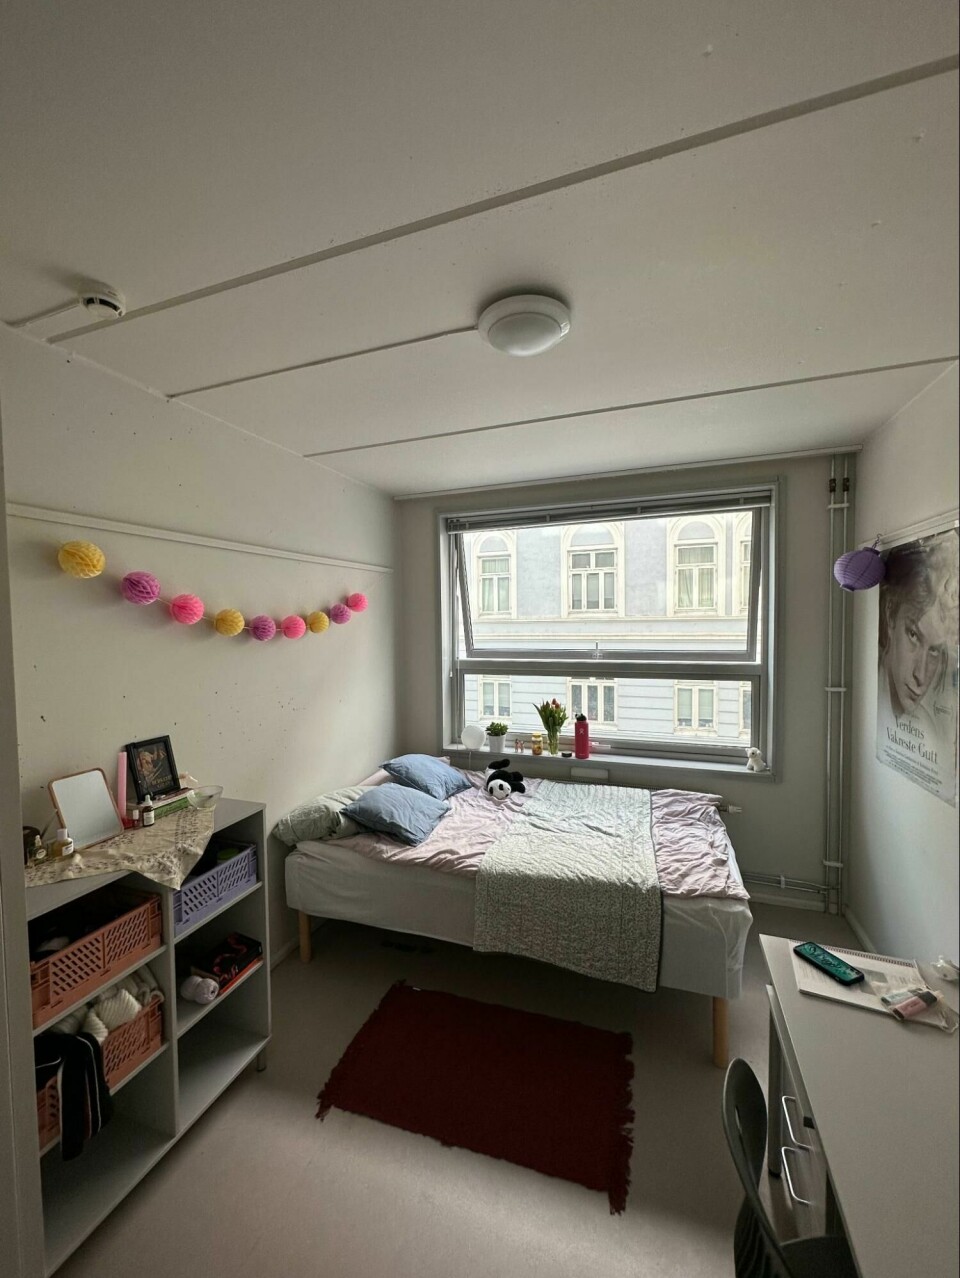 Ani’s bedroom at St. Hanshaugen.